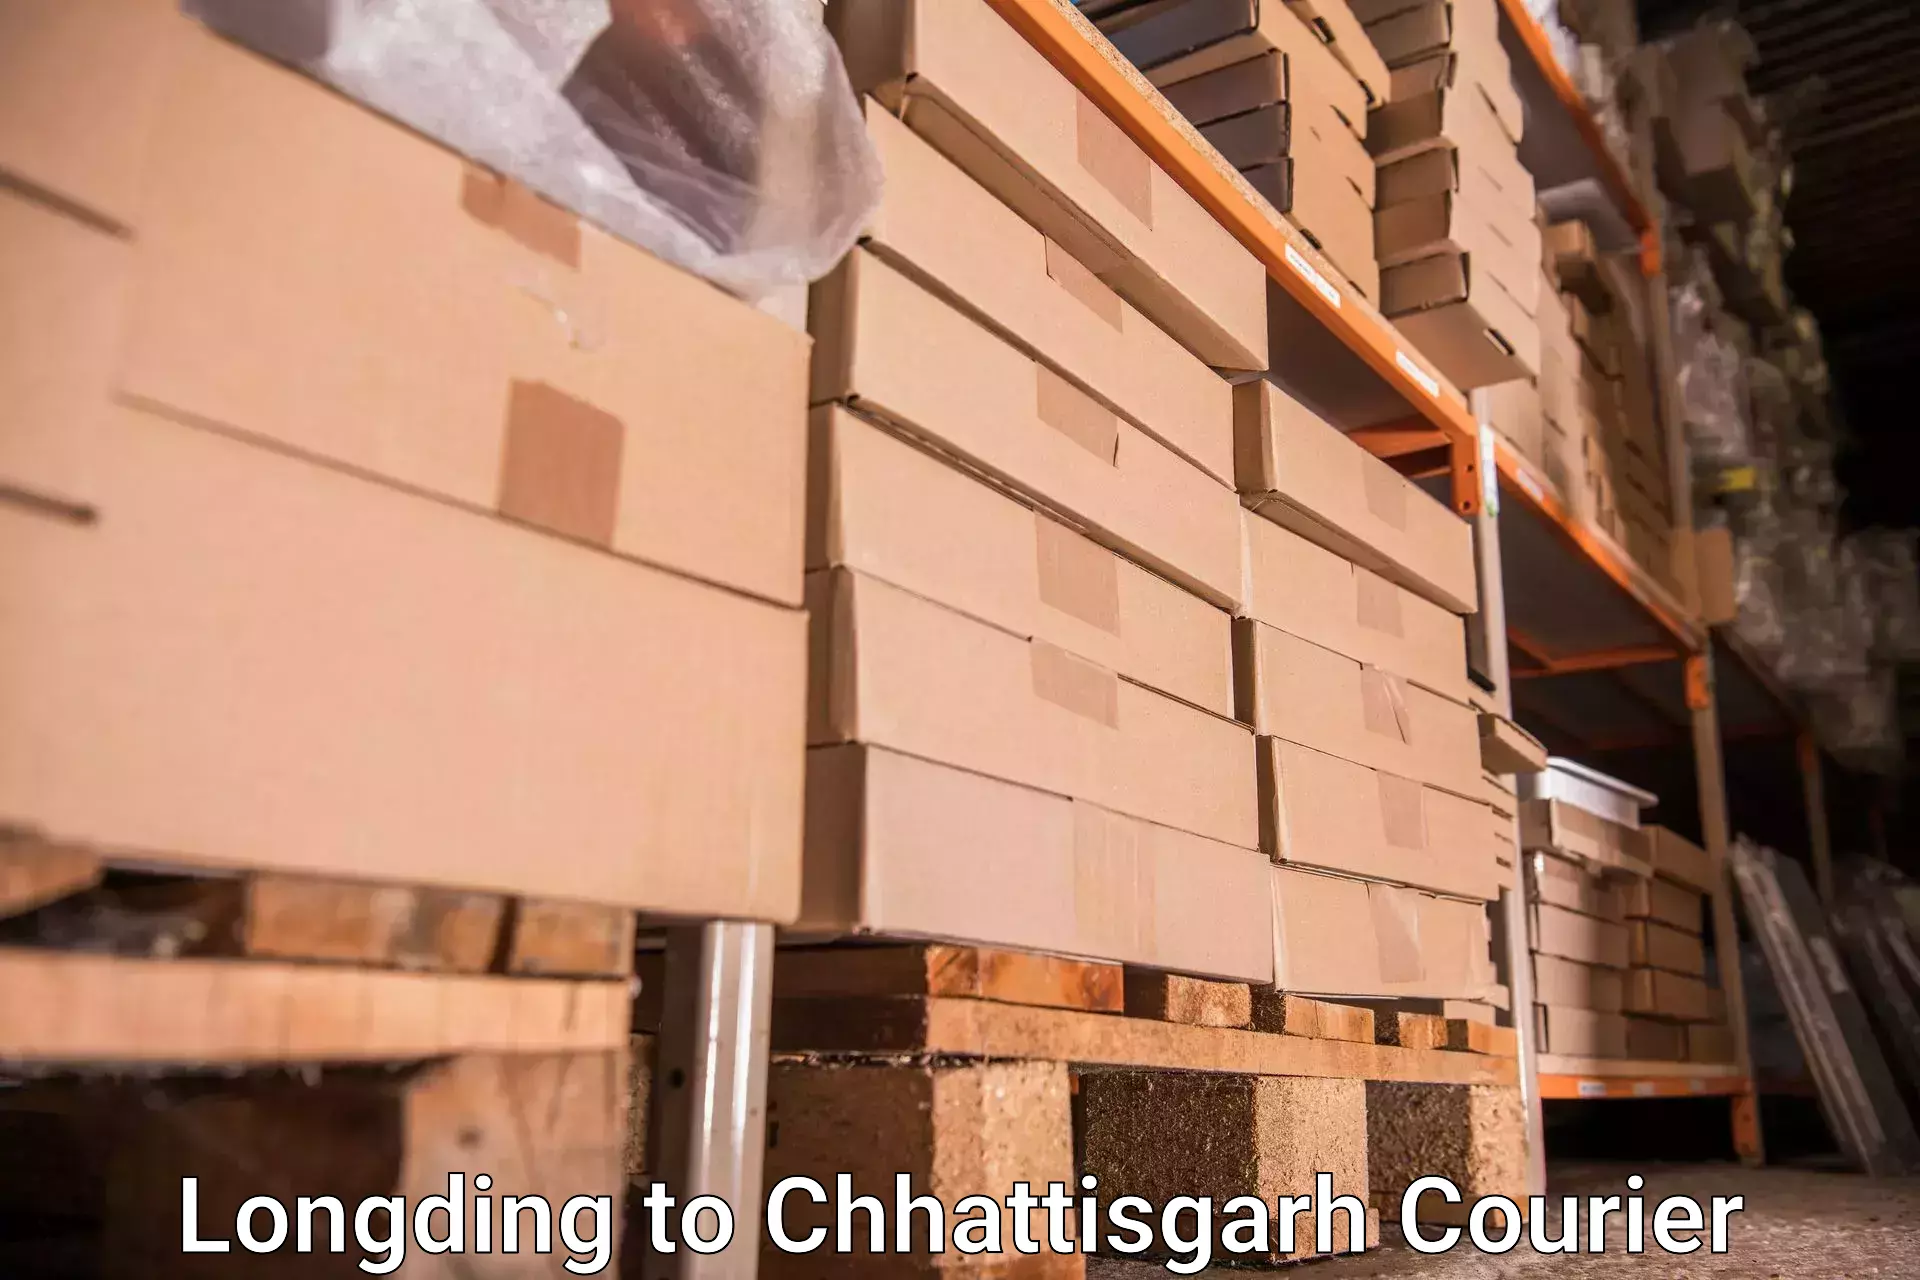 Baggage relocation service Longding to Korea Chhattisgarh